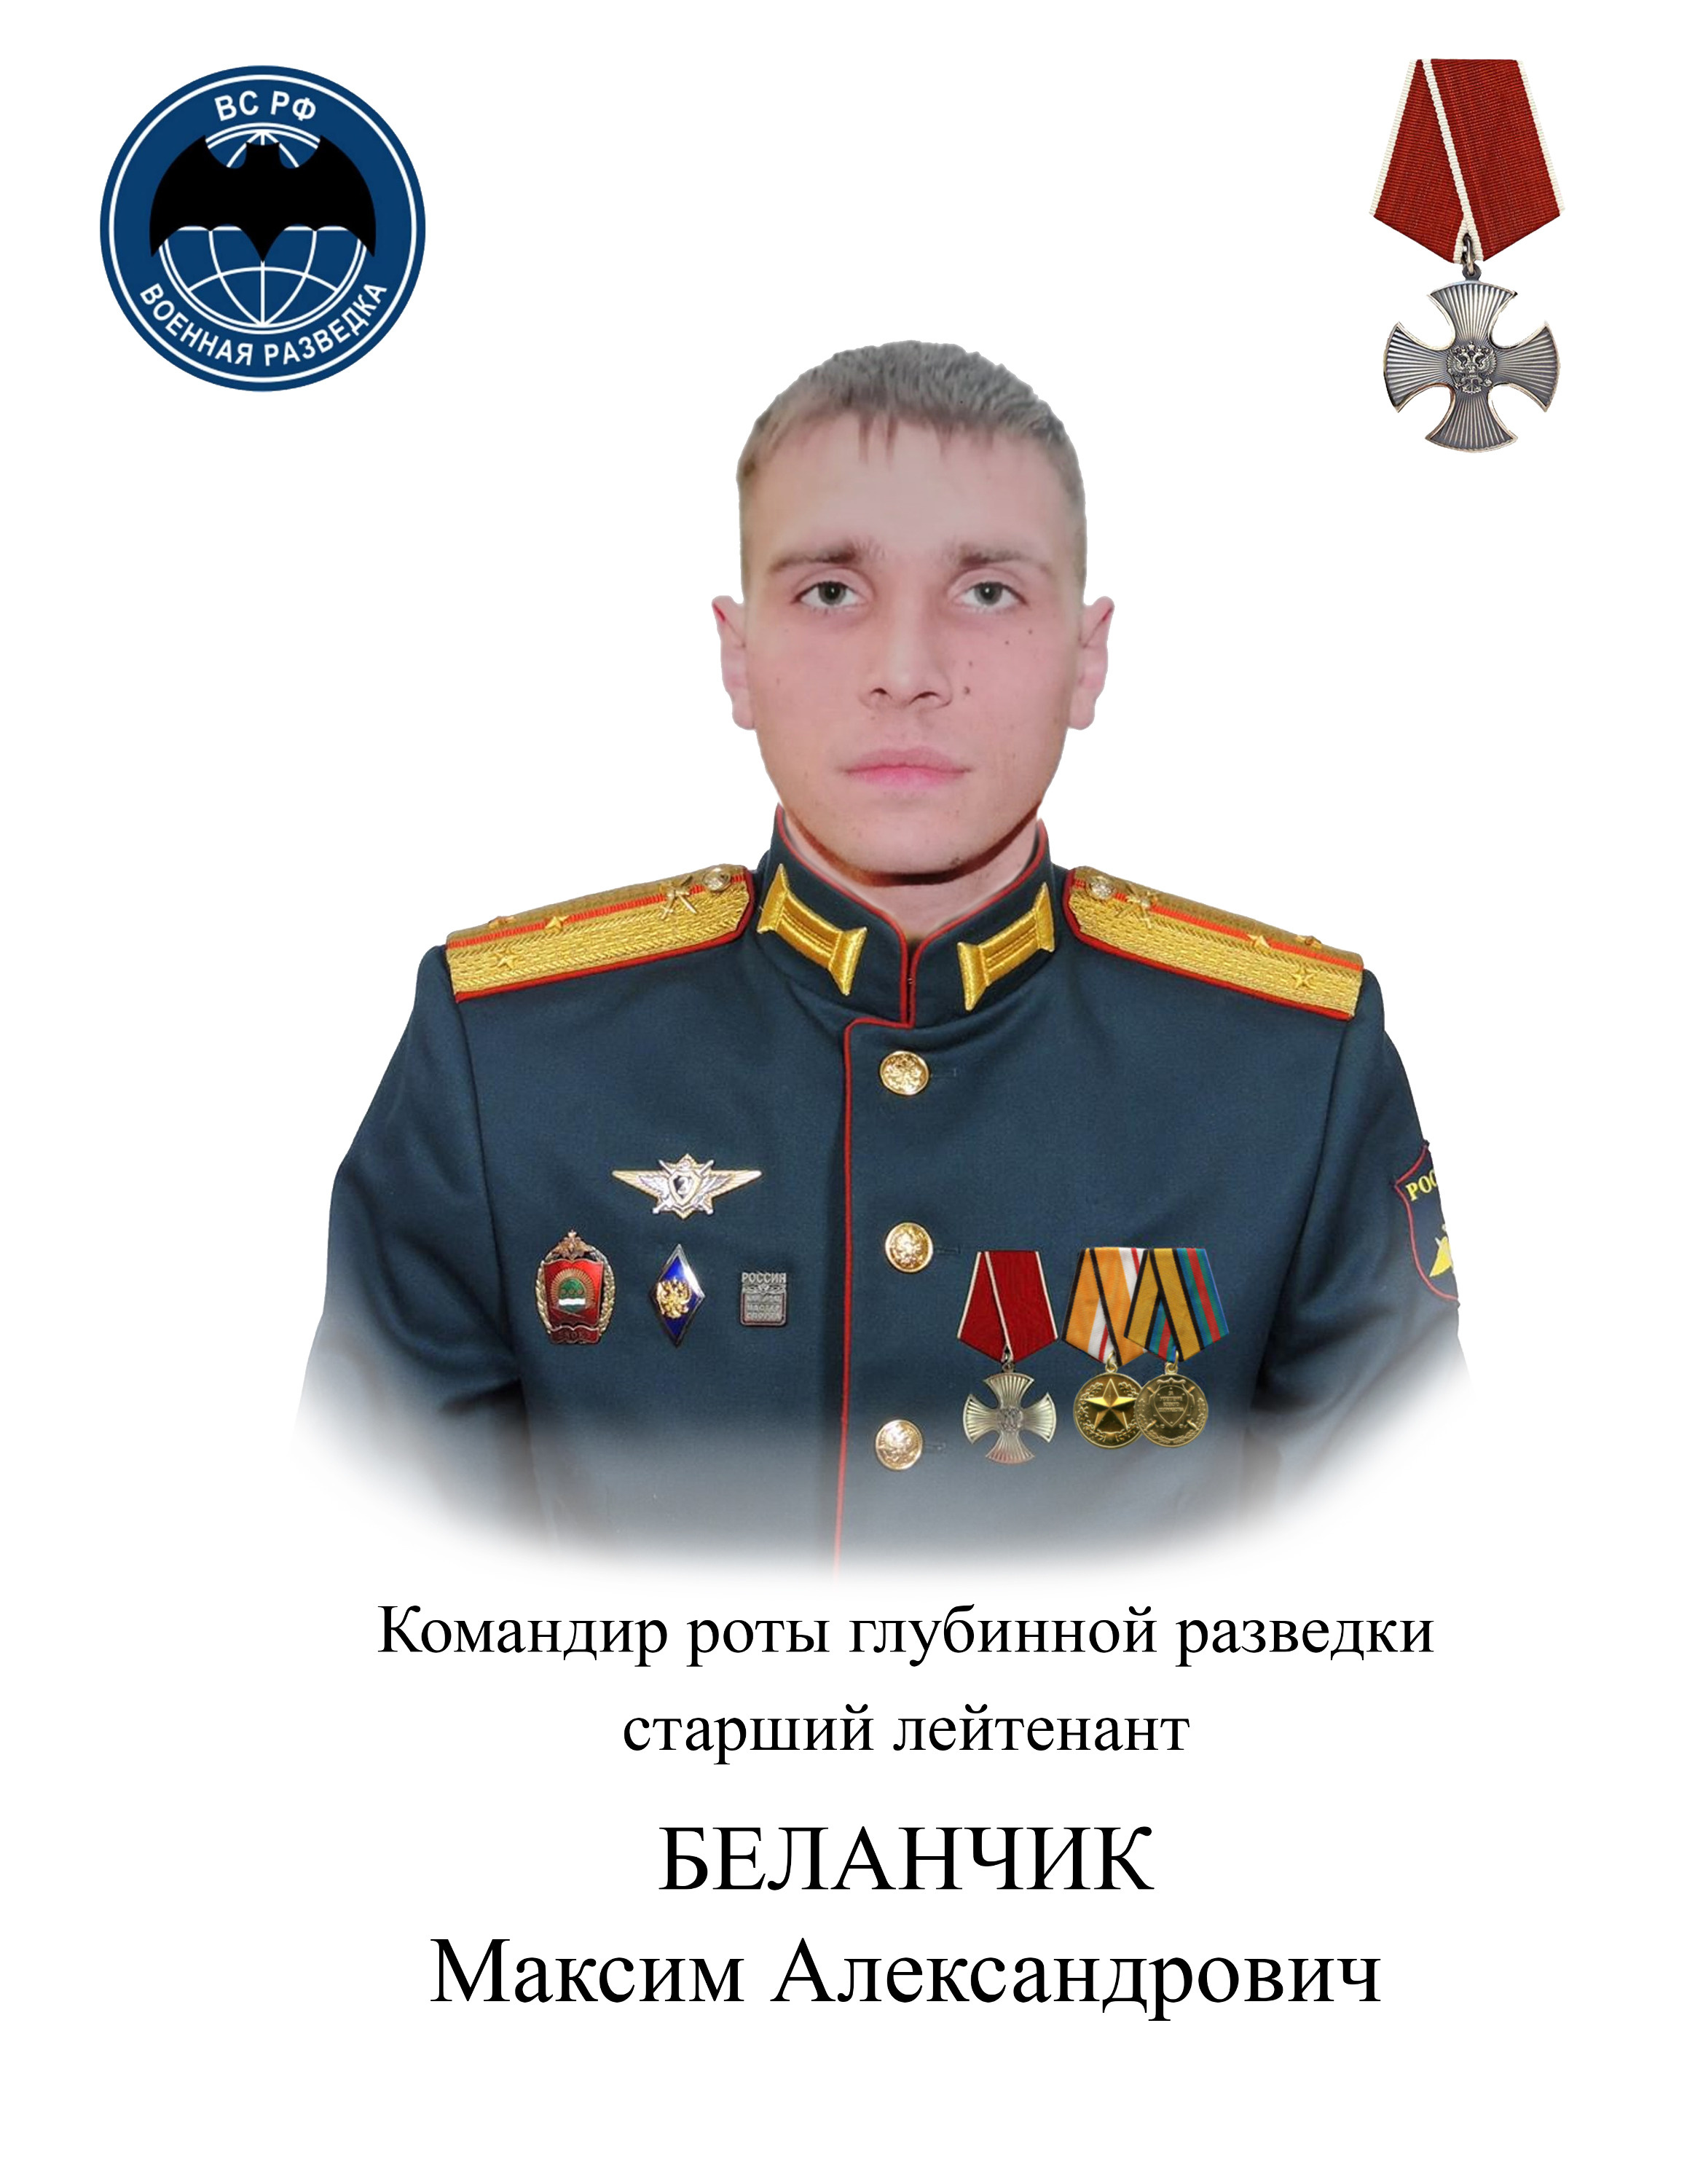 Старший лейтенант Максим Беланчик из Забайкалья погиб 13 мая 2022 года на Украине